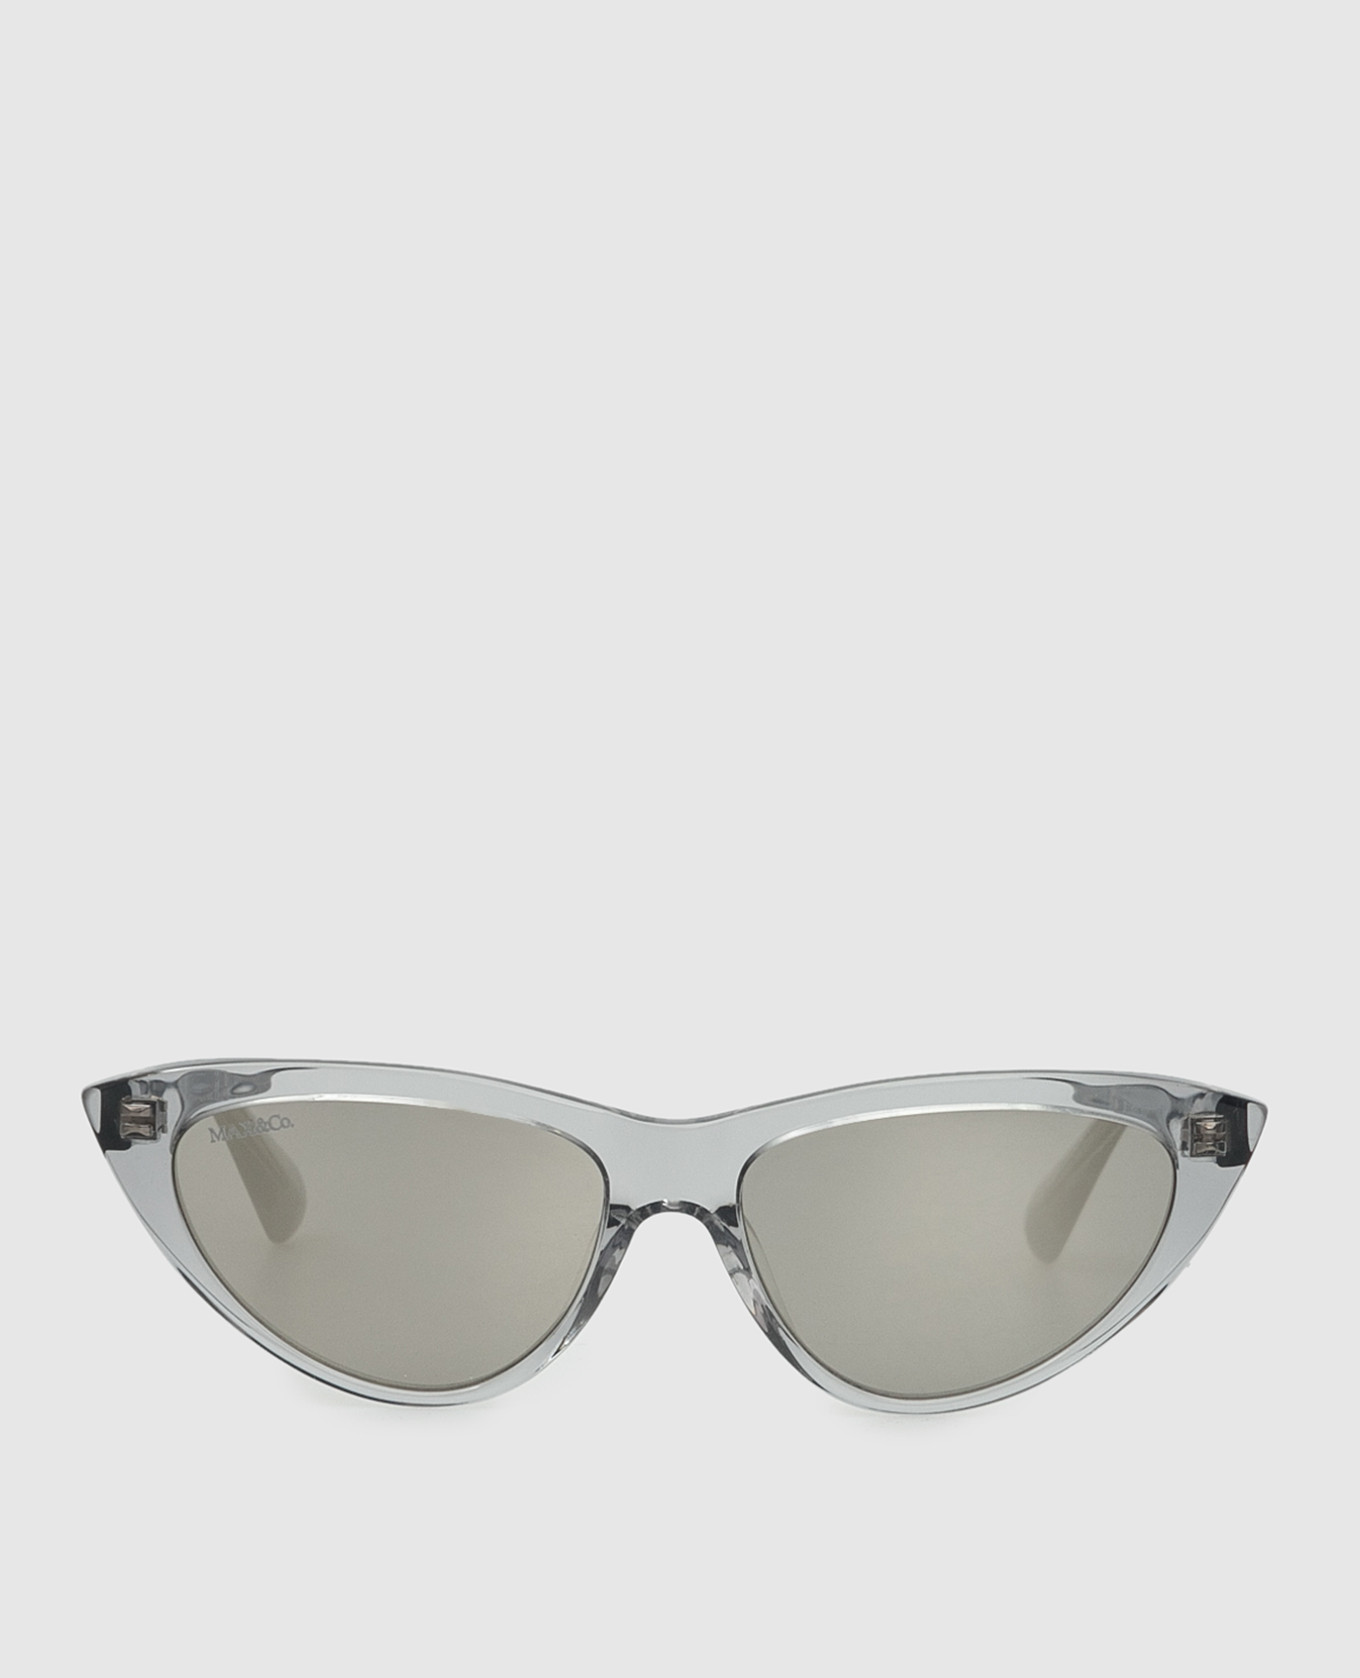 Light gray cat-eye glasses